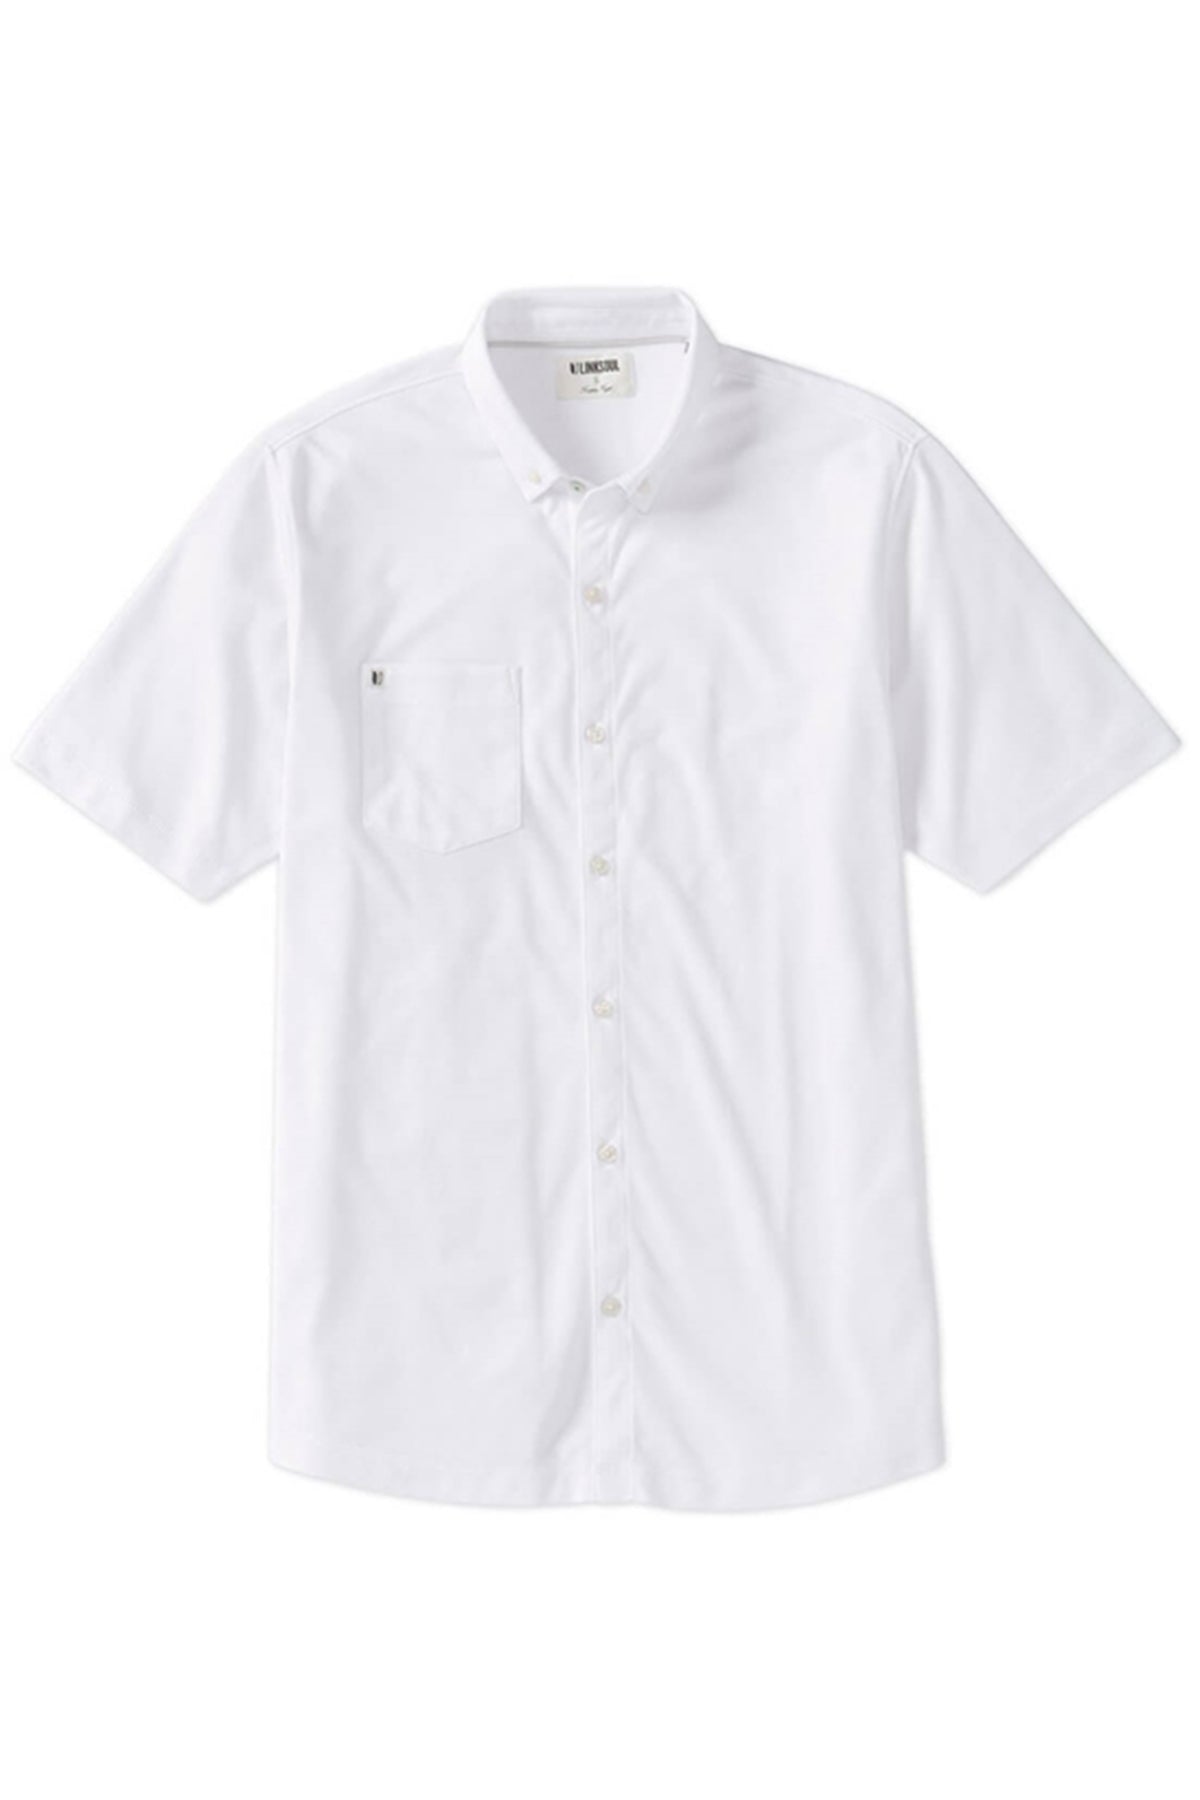 Linksoul Mens Full Button Short Sleeve Shirt, White